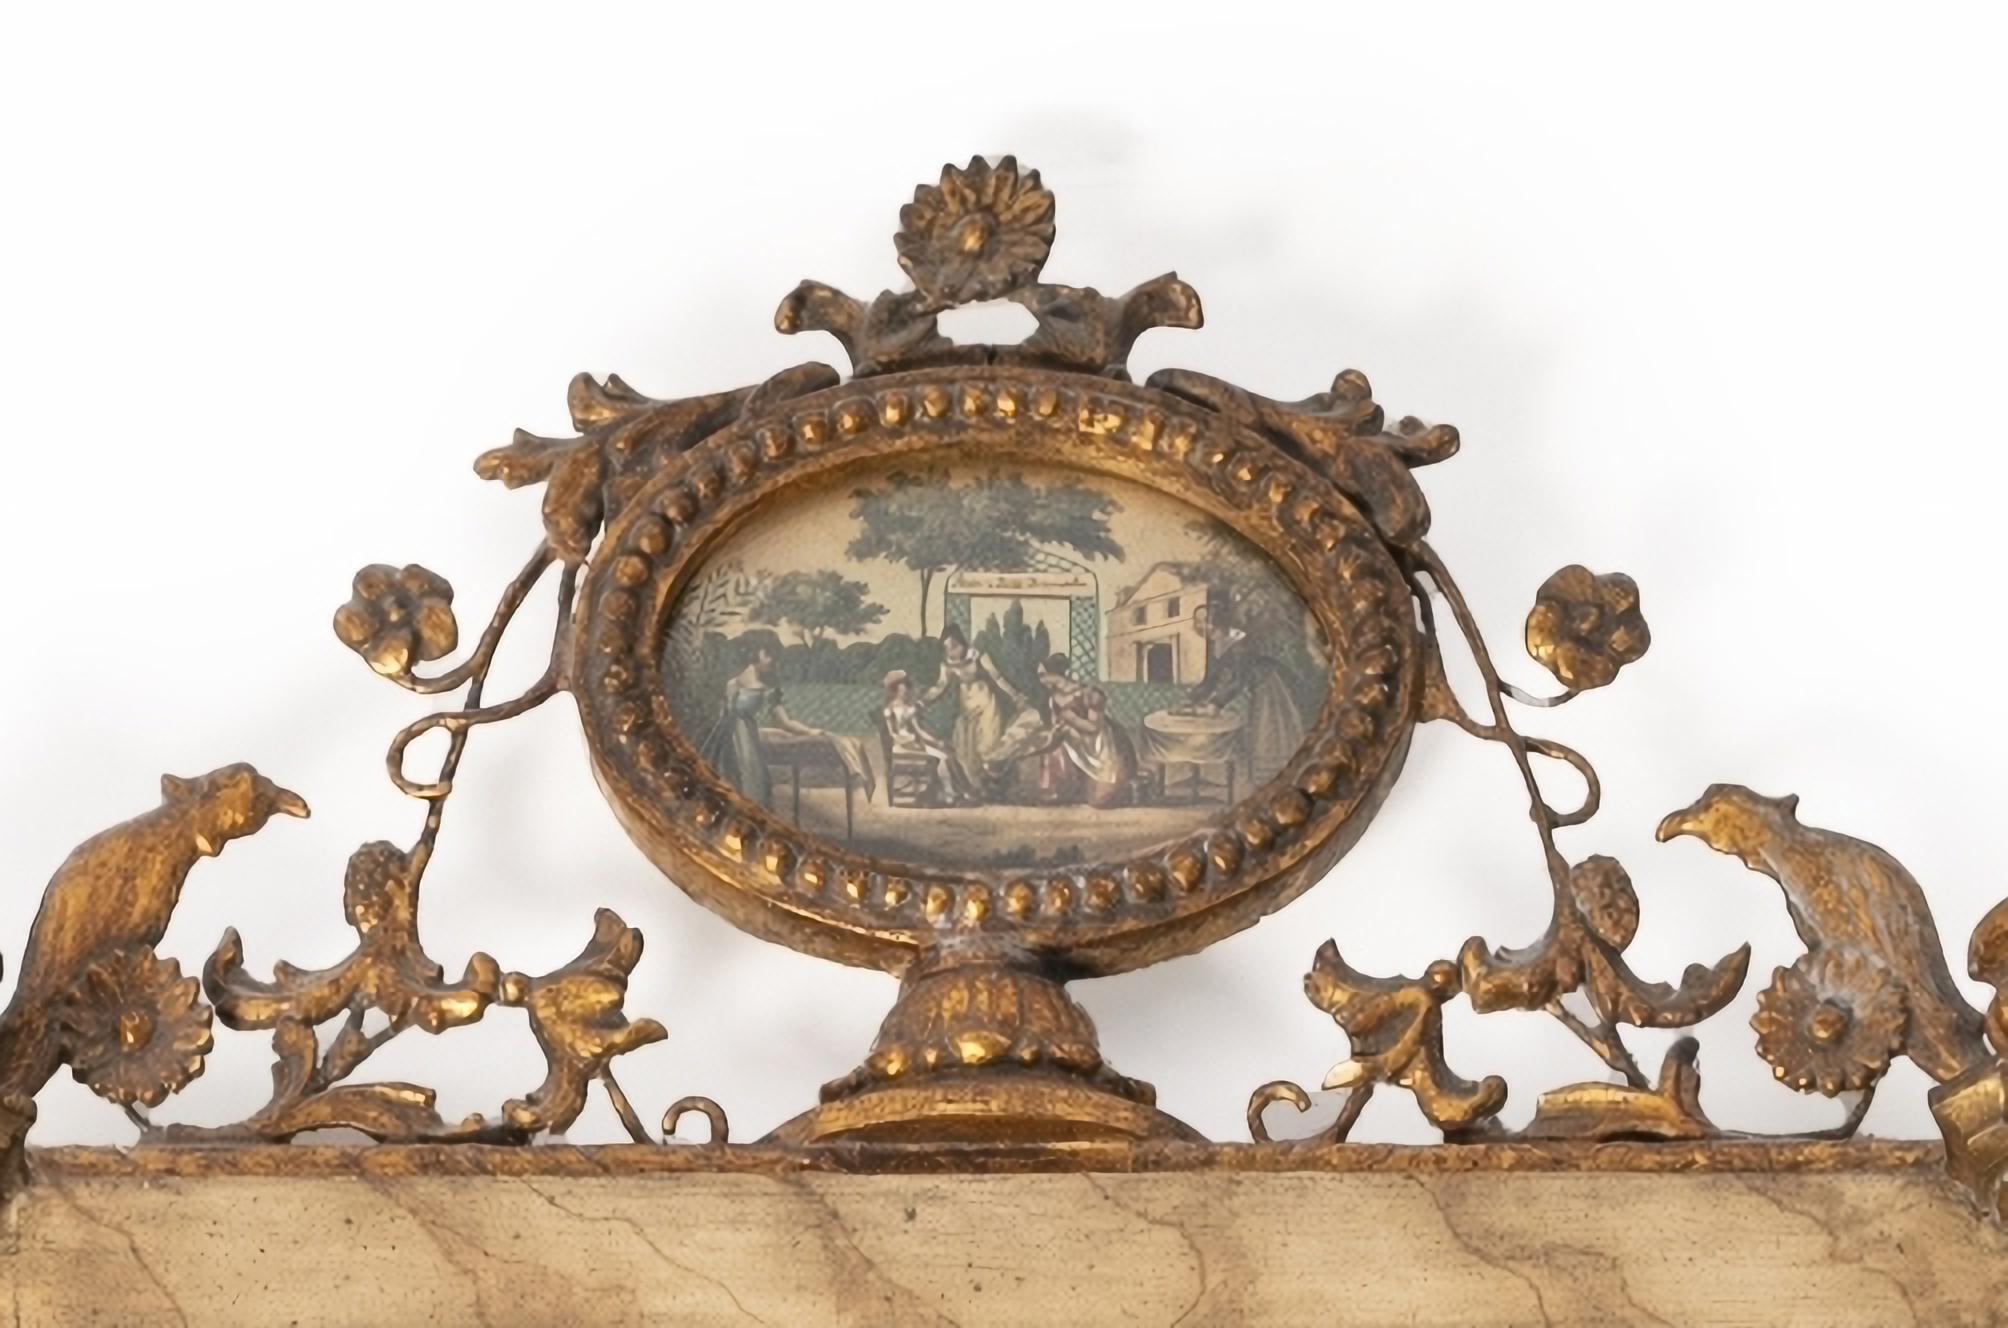 MIROIR MURAL FRANCAIS 19ème siècle
Néoclassique en bois sculpté et doré.
Signes d'utilisation.
Dim. : 94 x 51 cm
bonnes conditions